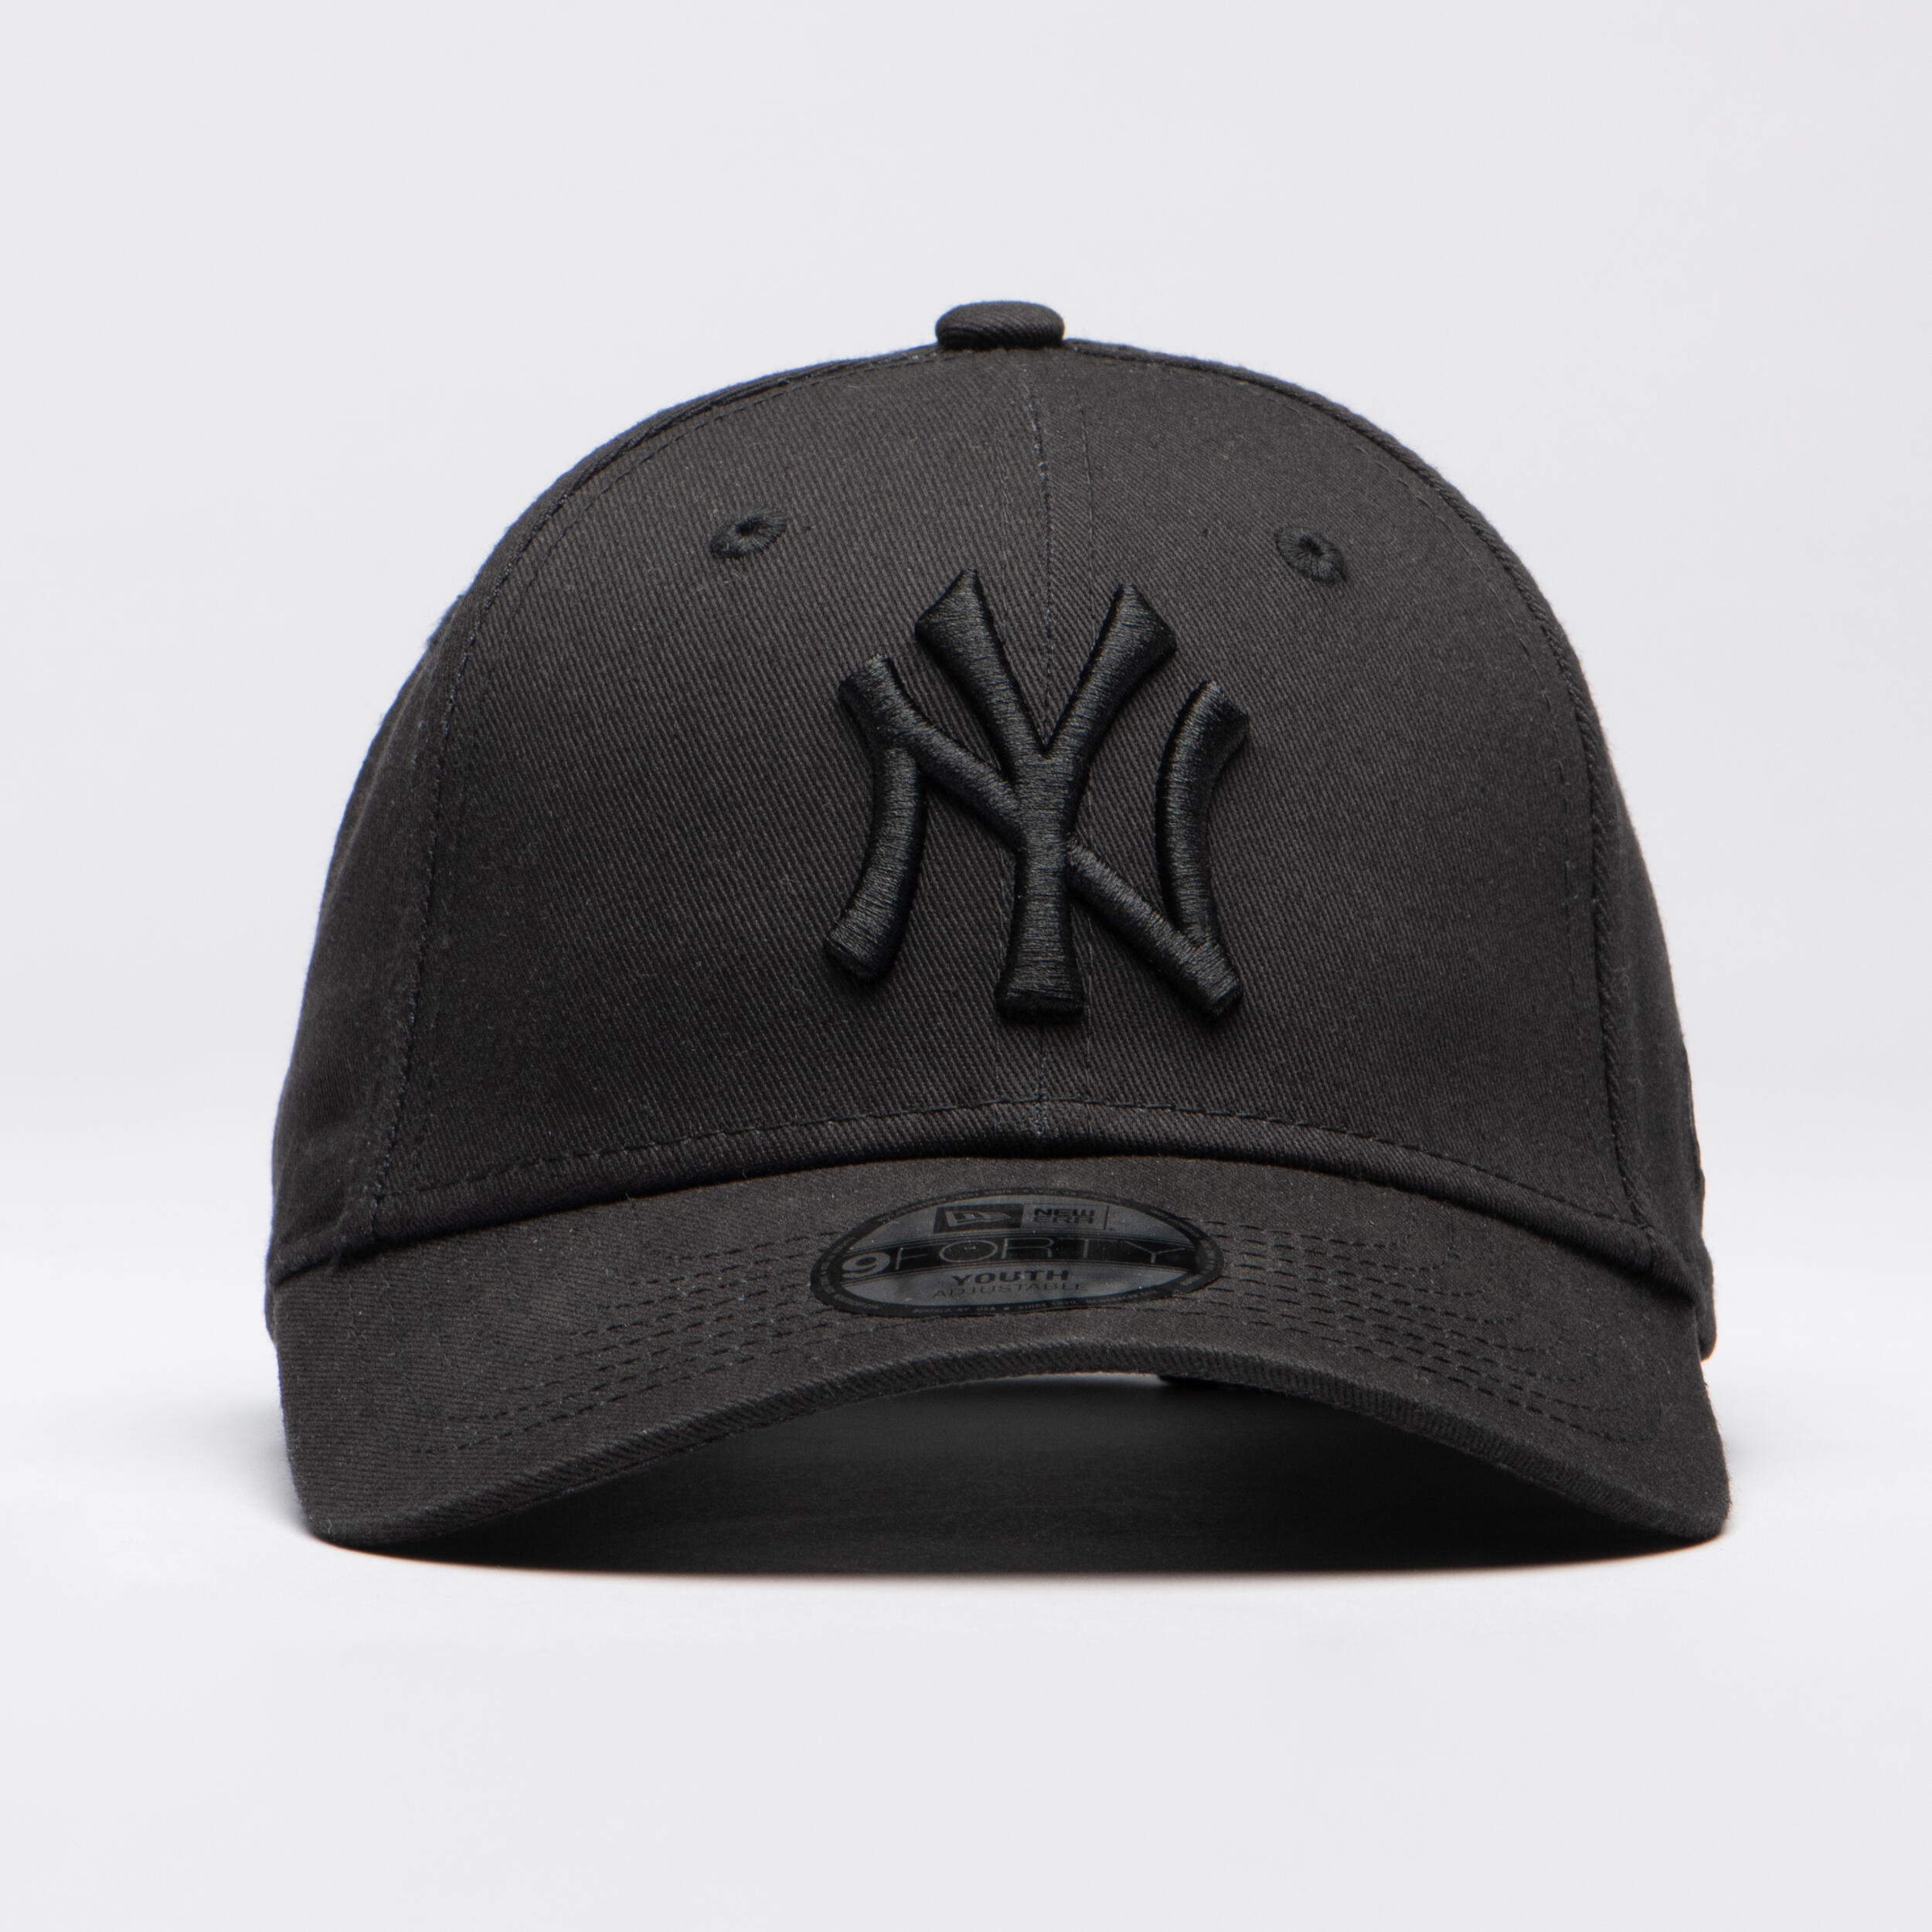 Men's / Women's MLB Baseball Cap New York Yankees - Black 1/5